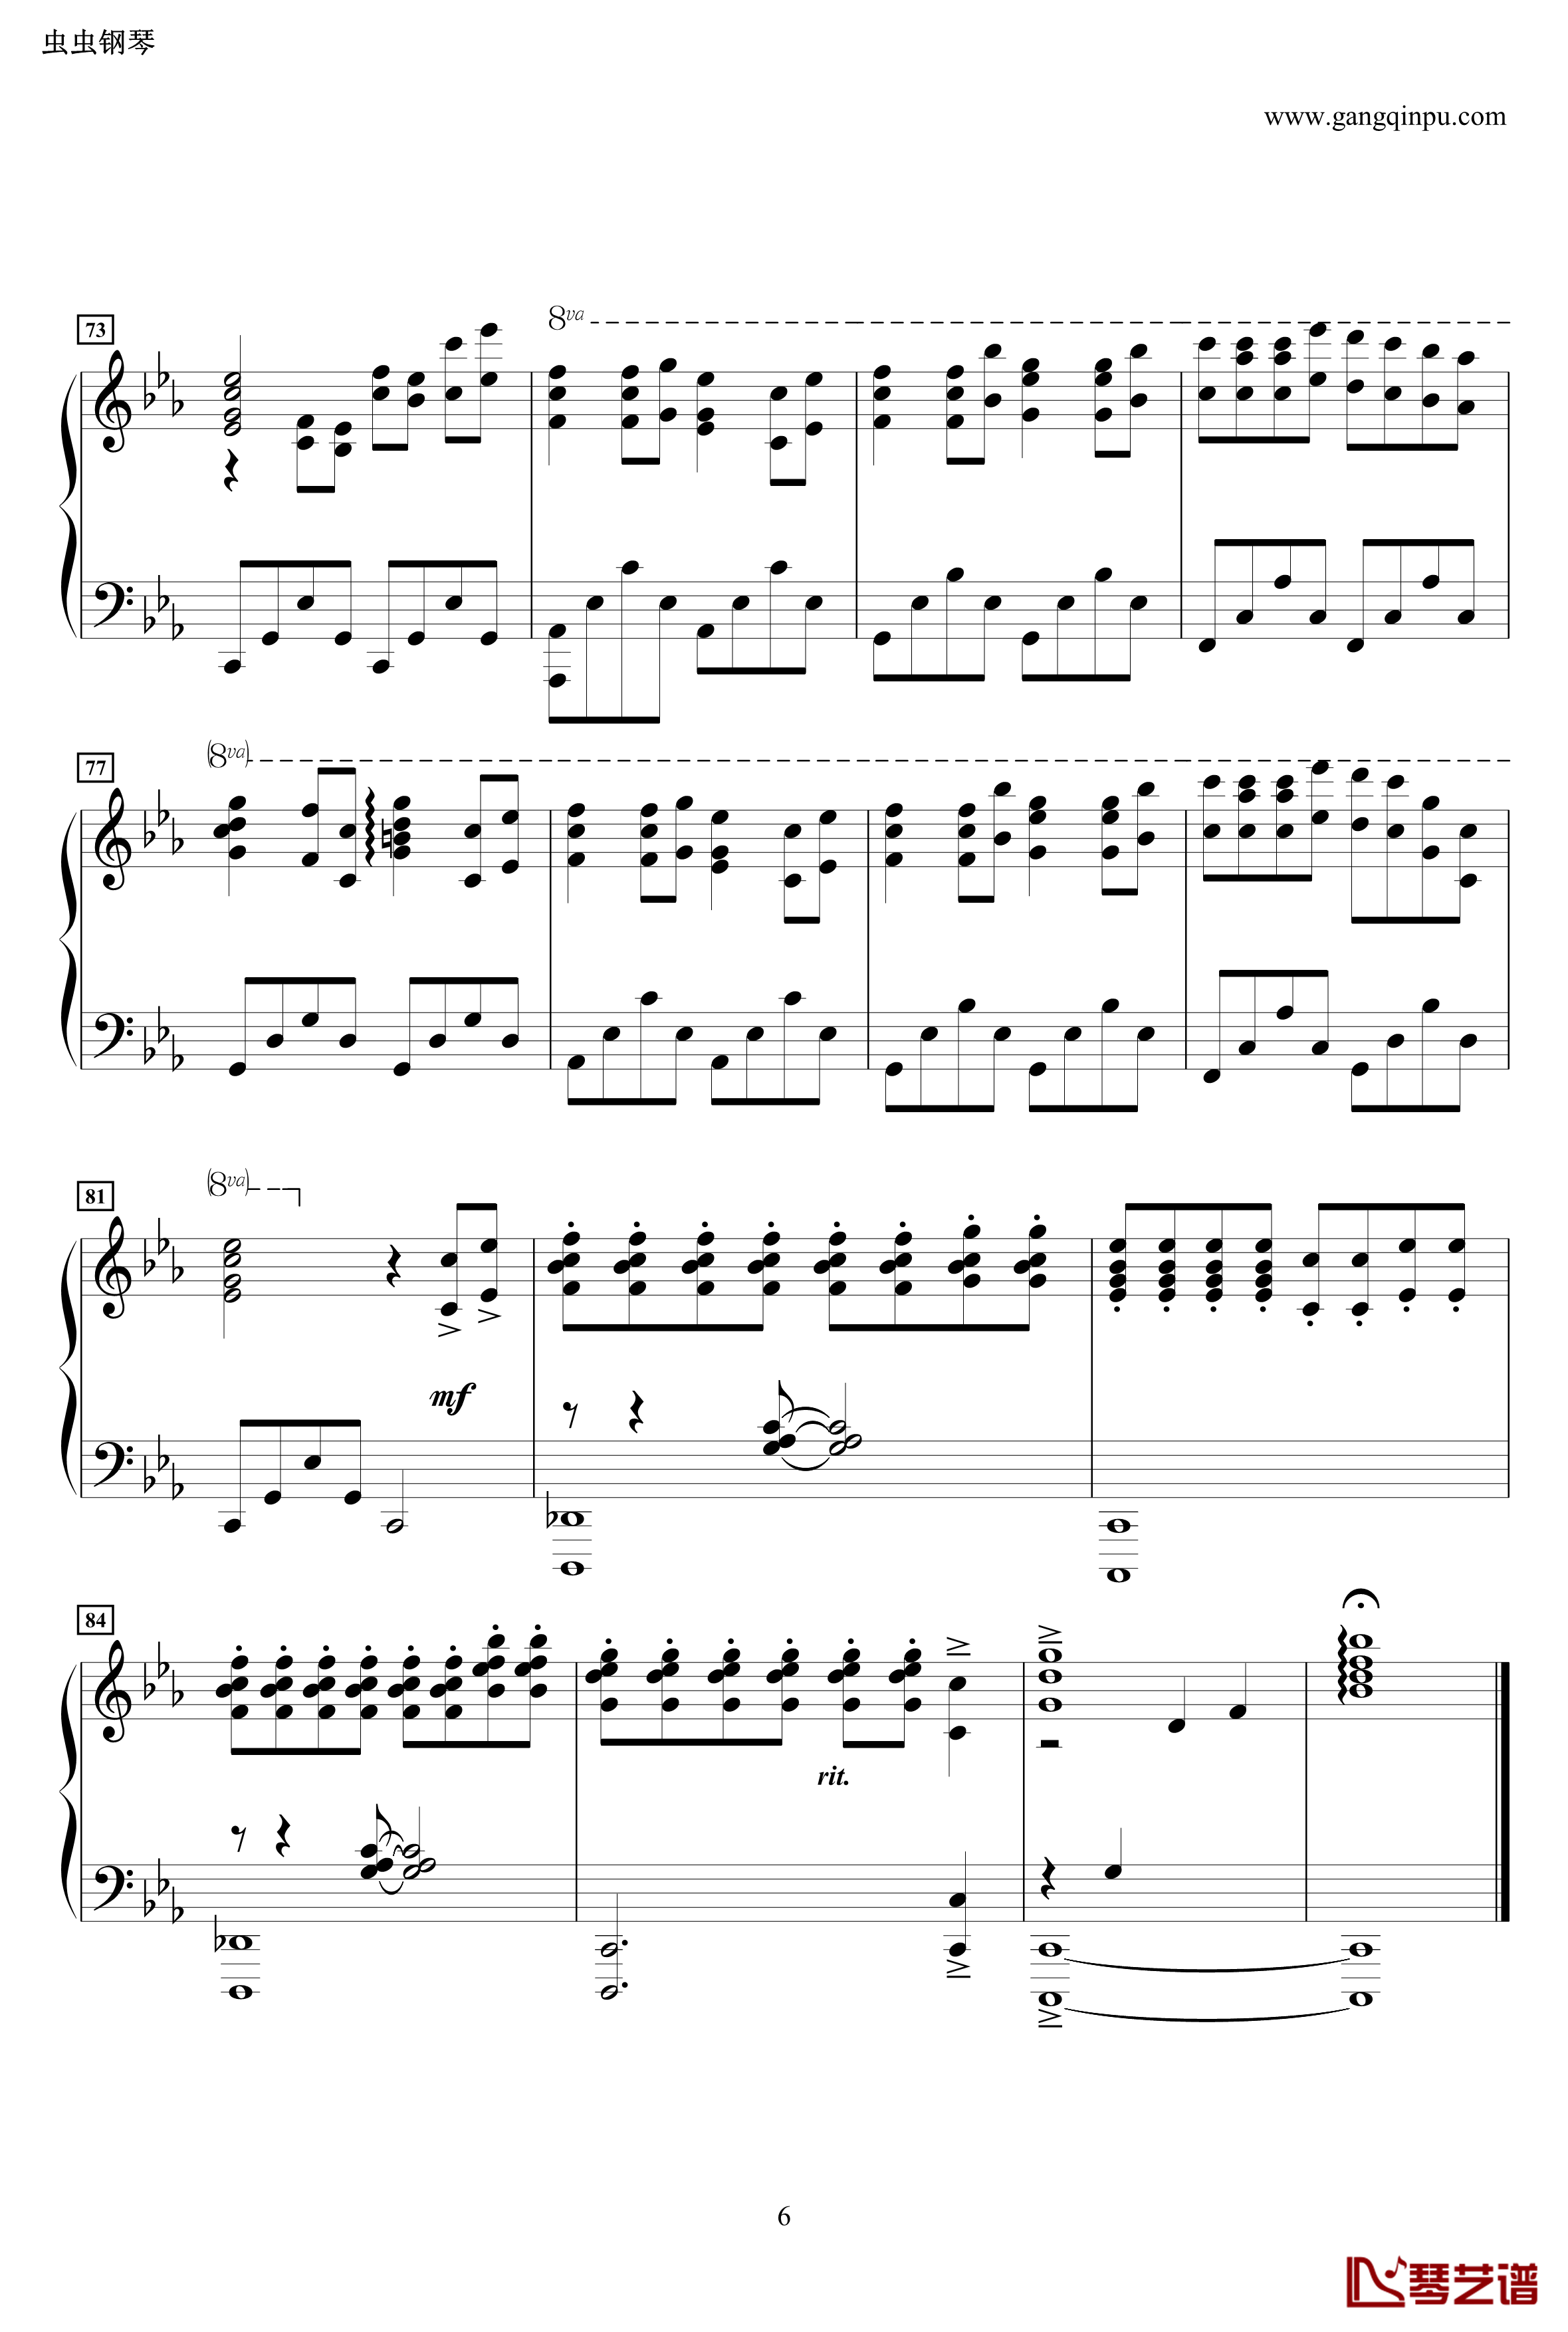 龙猫主题曲钢琴谱-风之甬道·風のとおり道·The Wind Forest·-·Best Original on Piano-久石让6